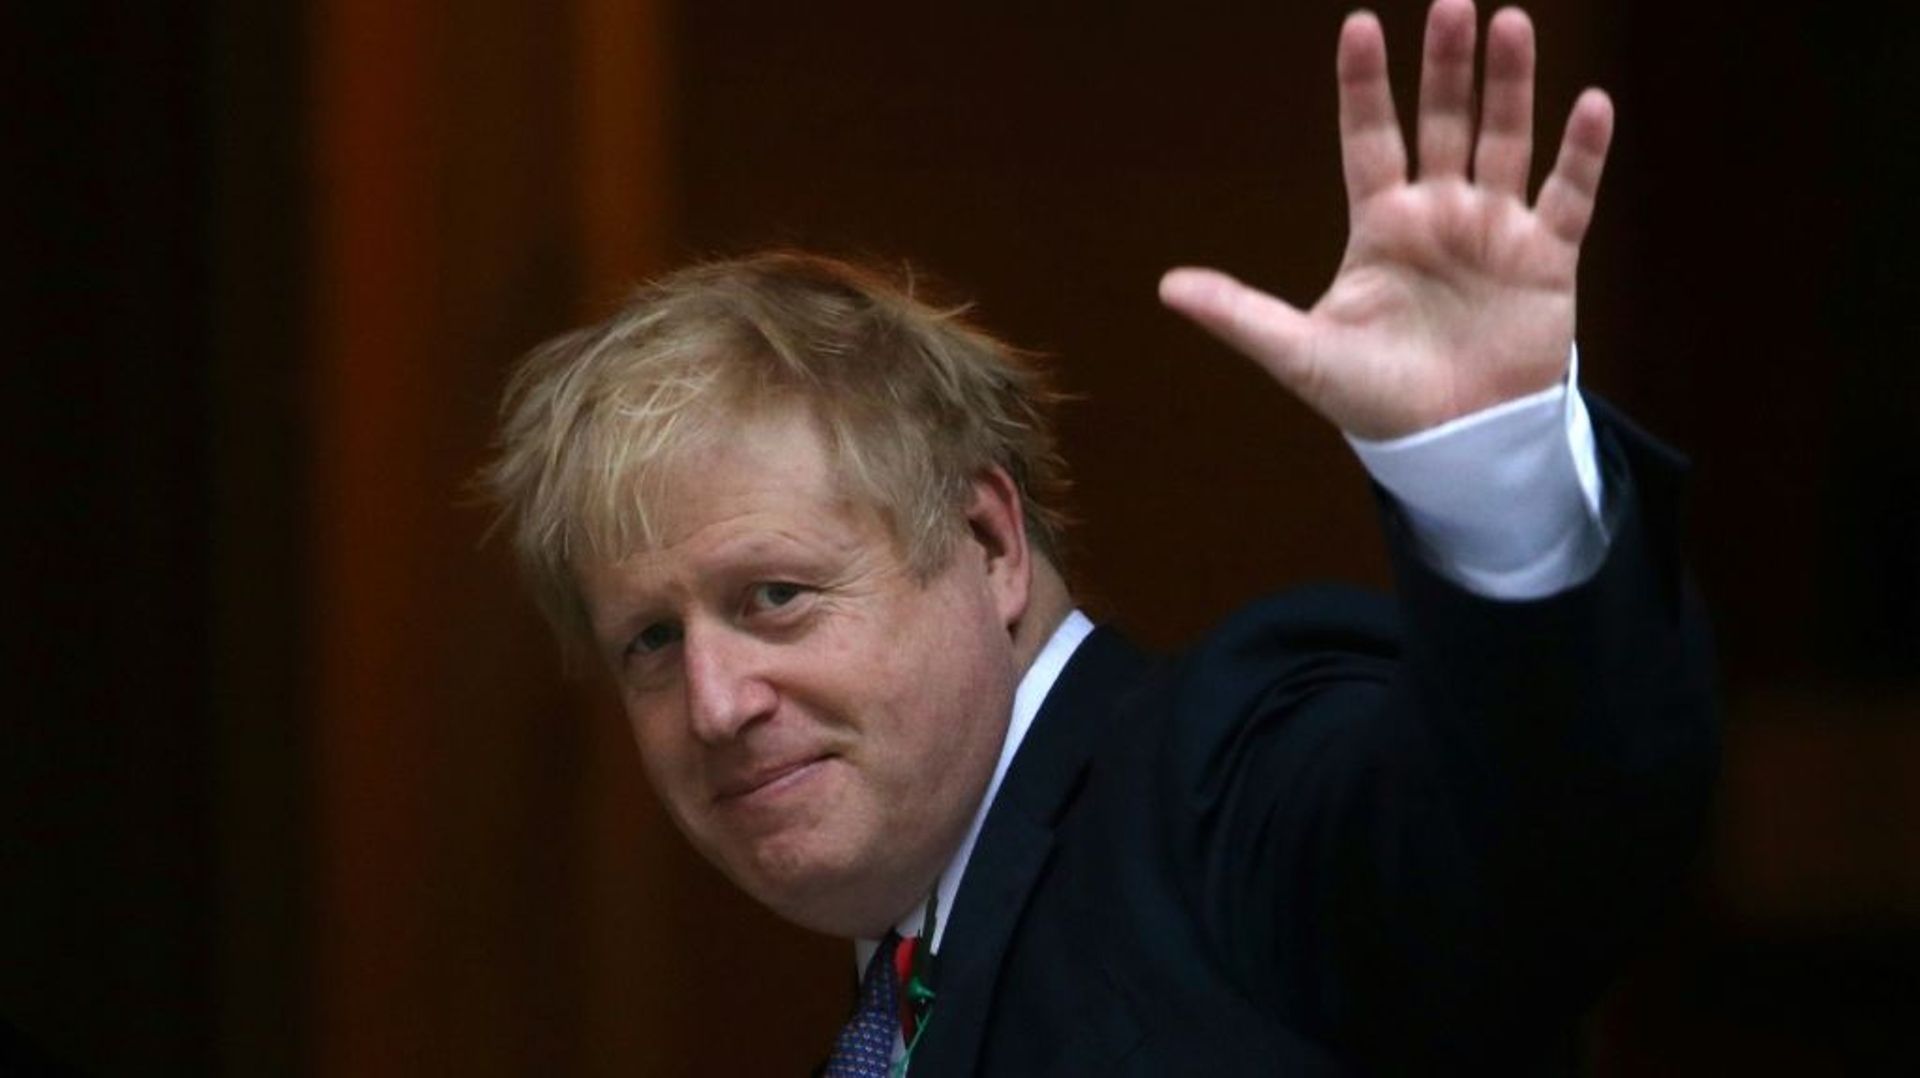 Le Premier ministre britannique Boris Johnson devant le 10 Downing Street, le 28 octobre 2019 à Londres